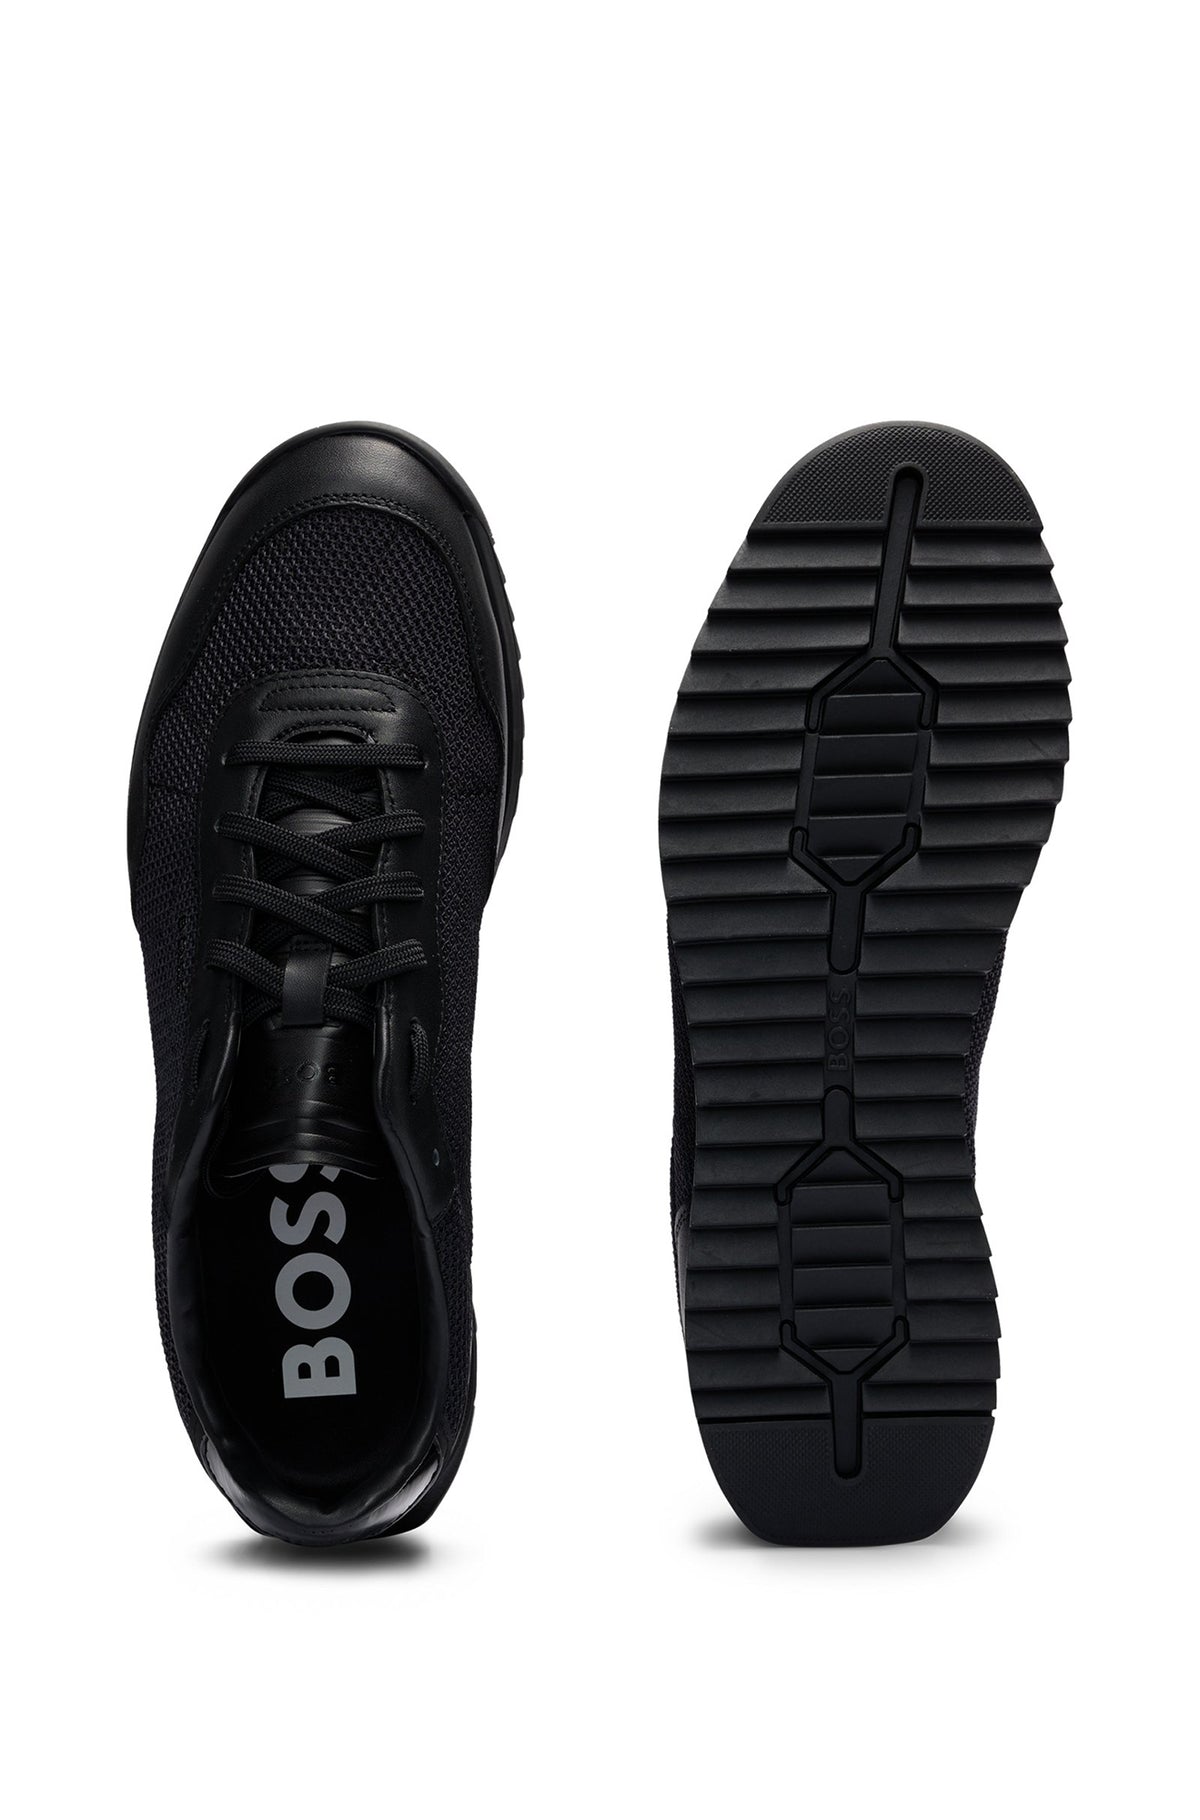 Souliers pour homme par HUGO BOSS collection Sport | 50517270 Noir/005-BLACK | Boutique Vvög, vêtements mode pour homme et femme